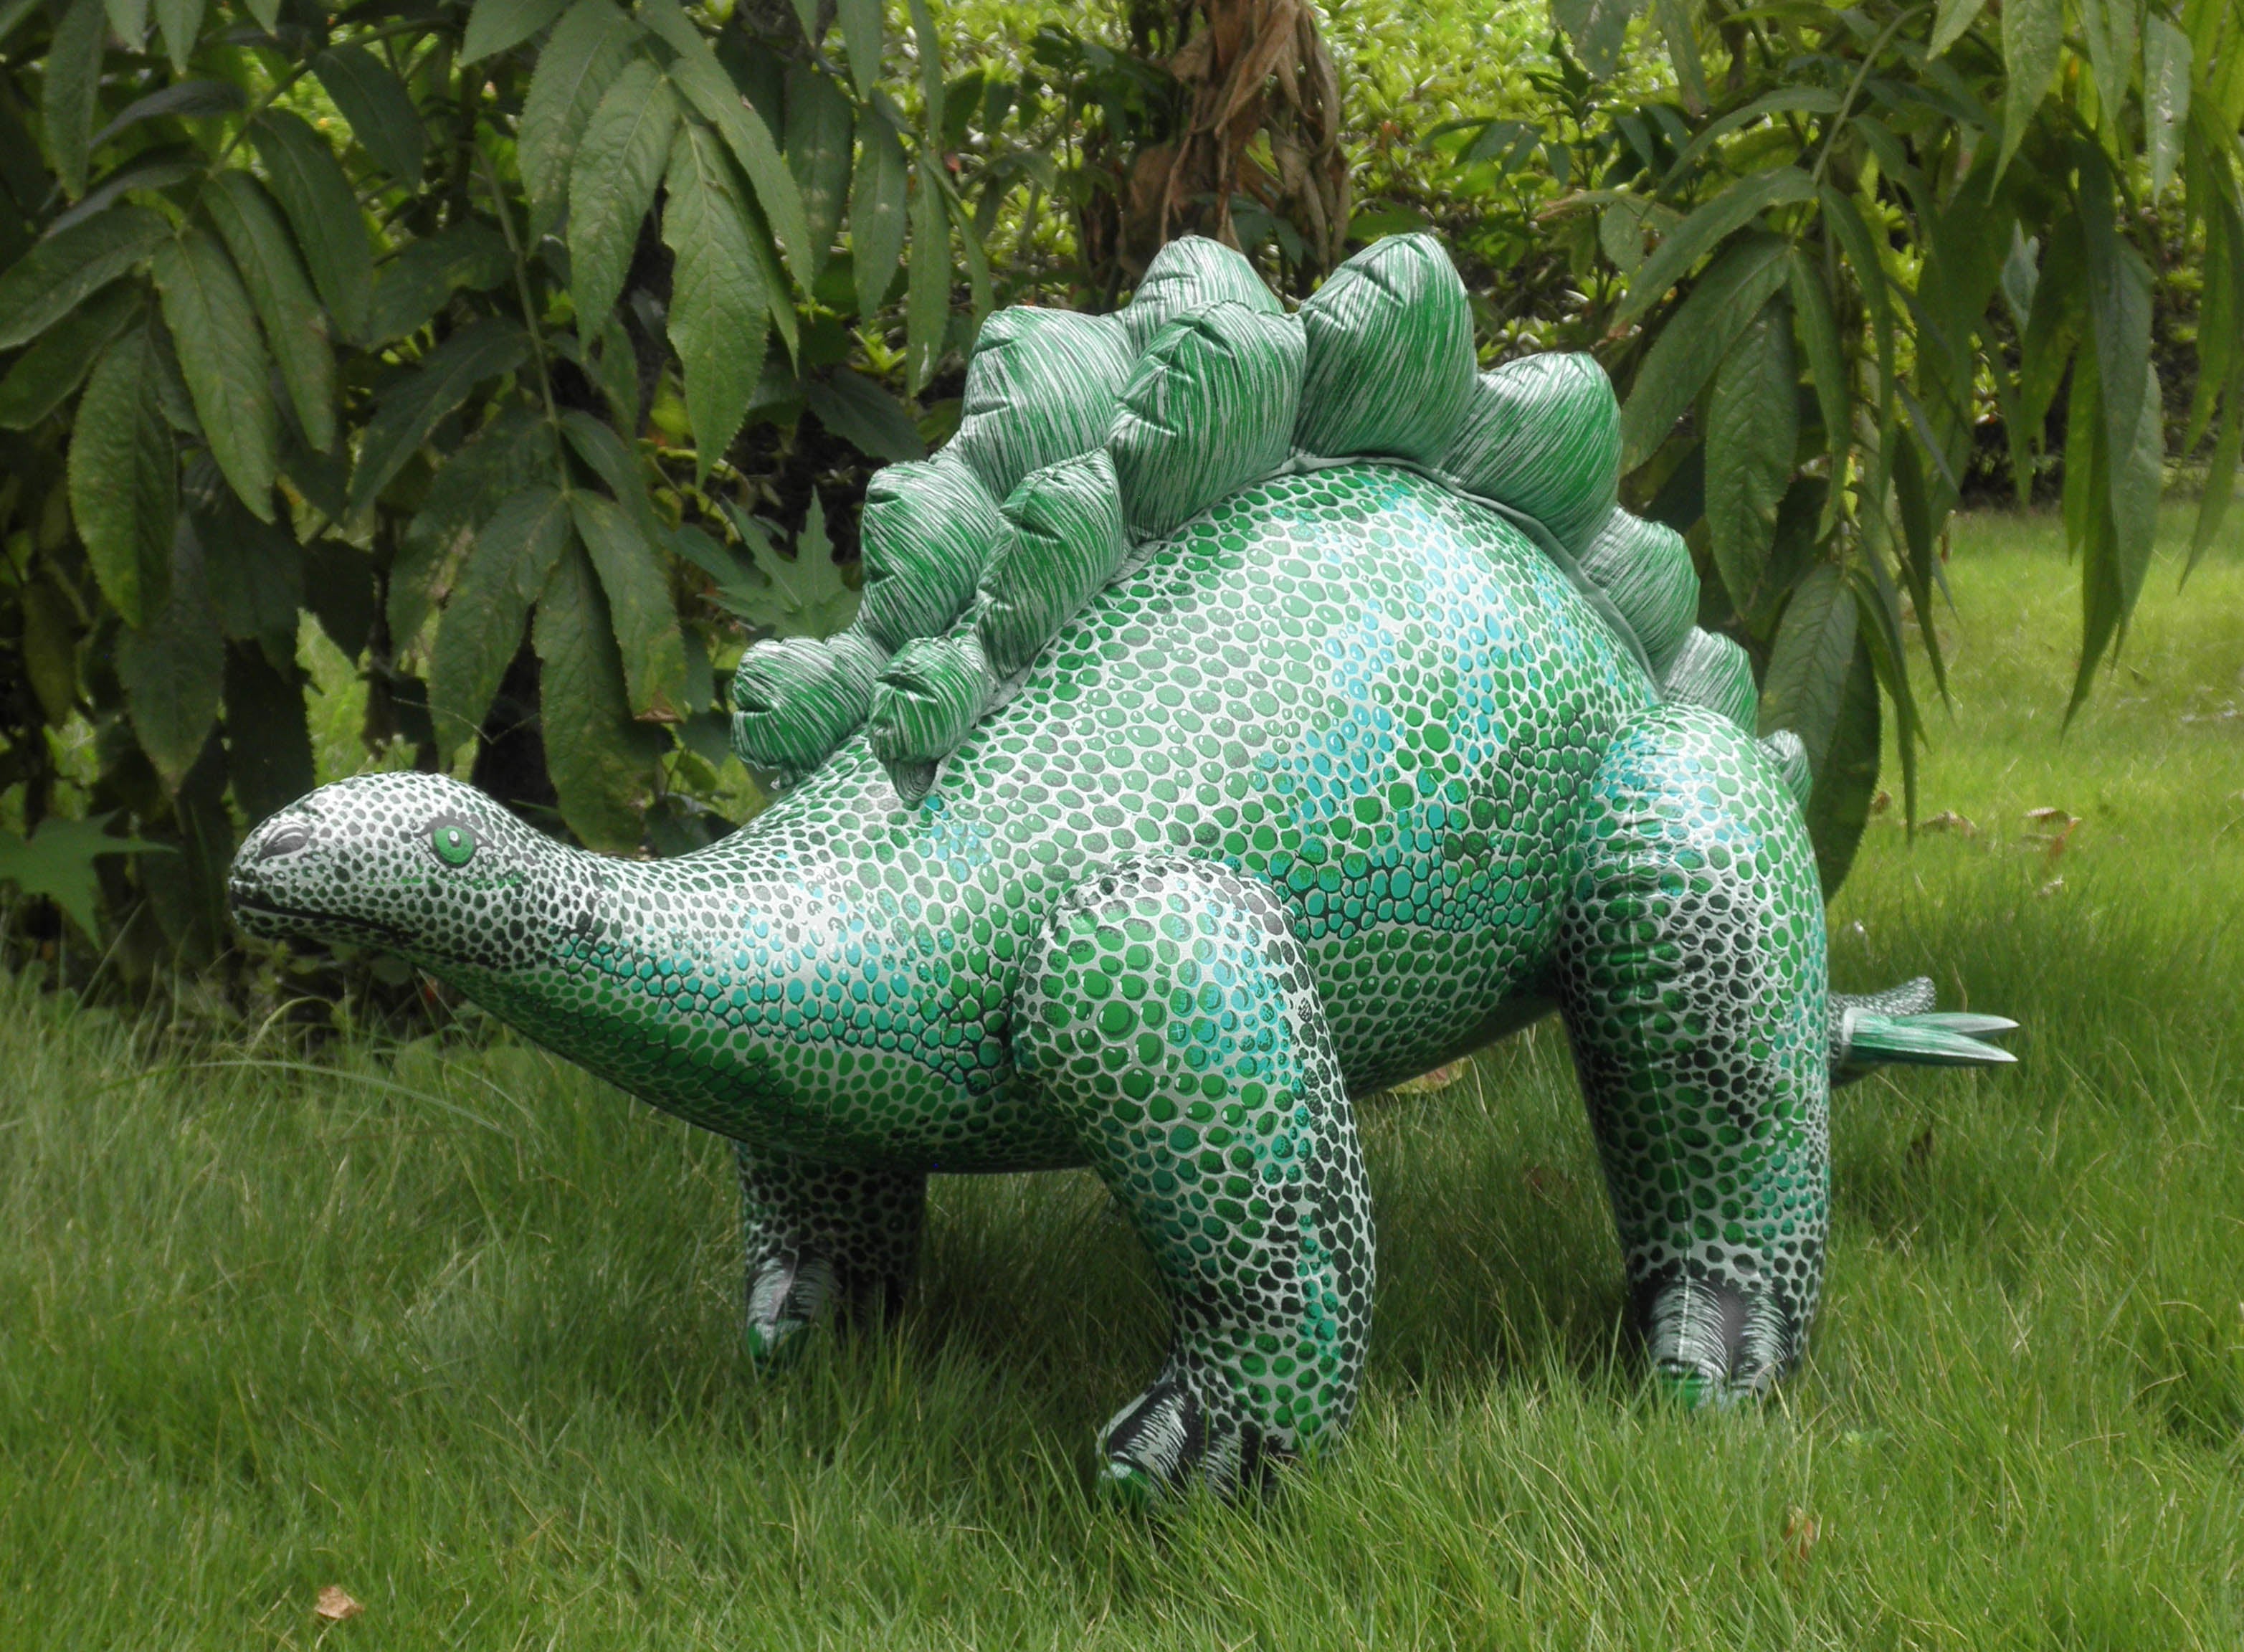 Inflatable Stegosaurus